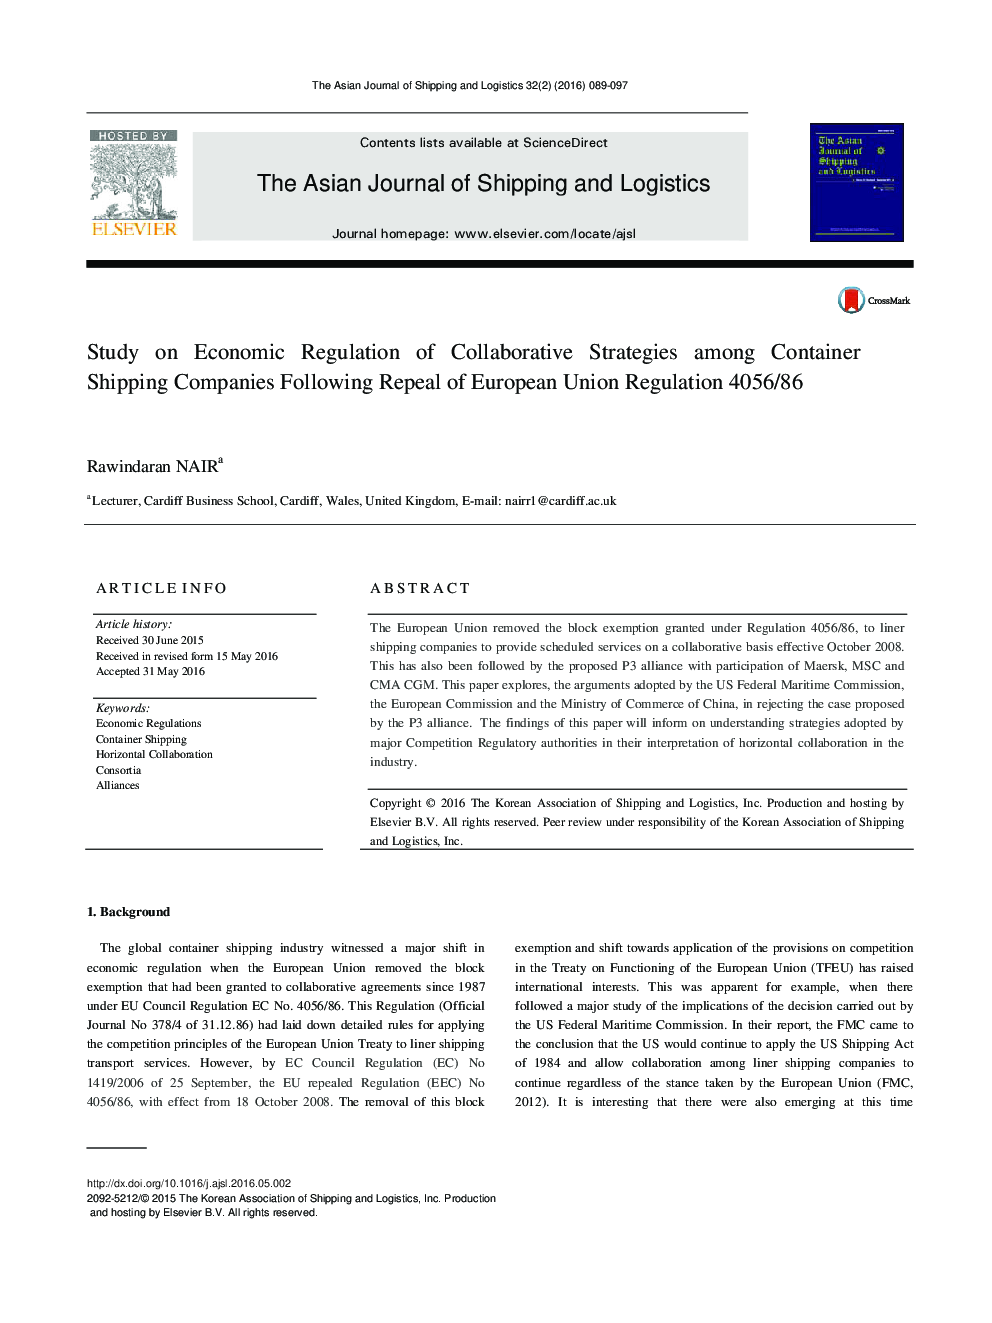 مطالعه در مقررات اقتصادی استراتژی های مشترک در میان شرکت های حمل و نقل کانتینر بدنبال لغو مقررات اتحادیه اروپا 4056/86